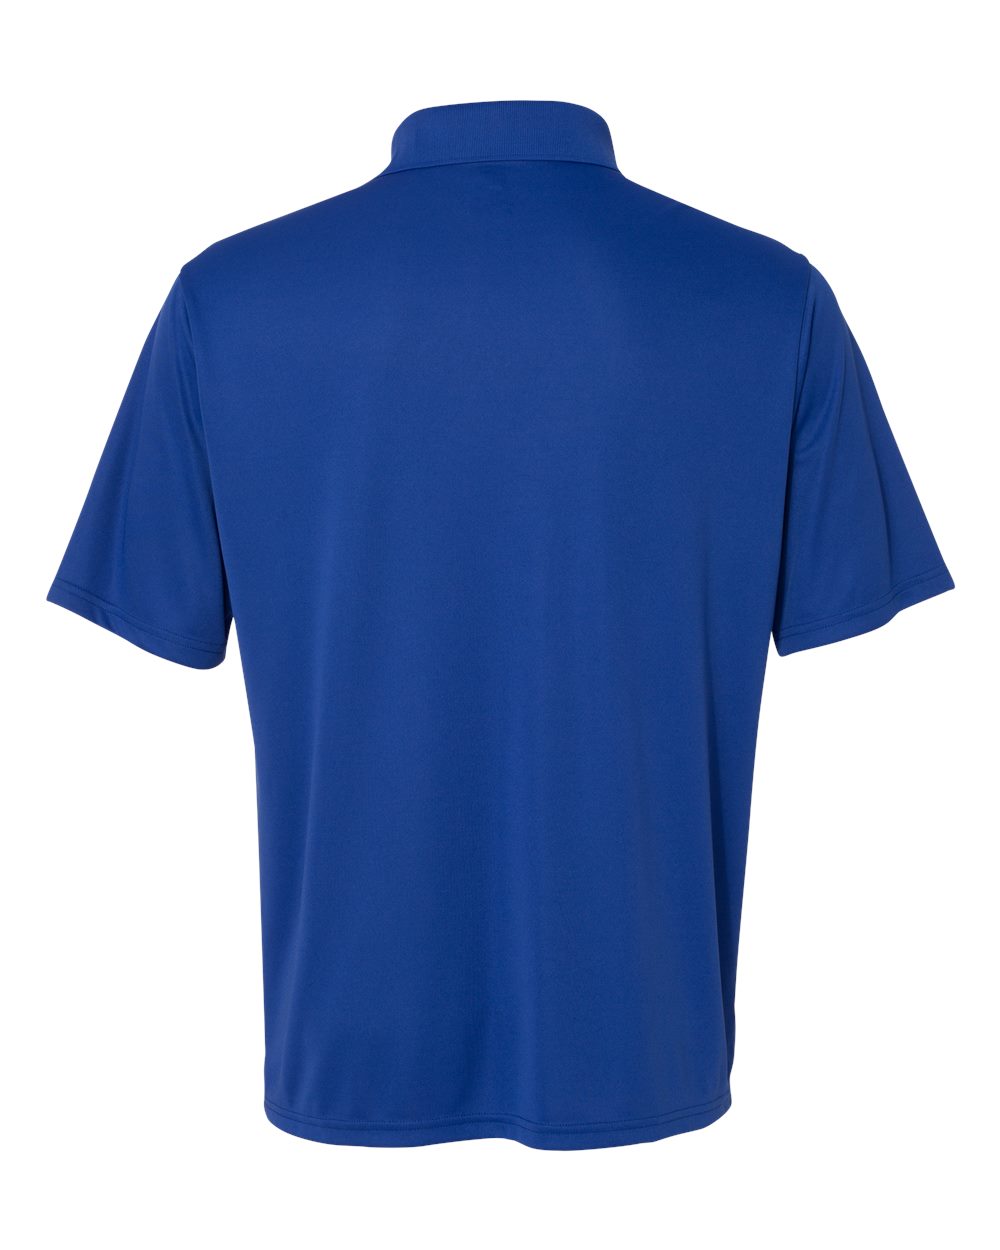 Hanes Mens Cool Dri Sport Shirt Short Sleeve Button Collar T Shirt 4800 ...